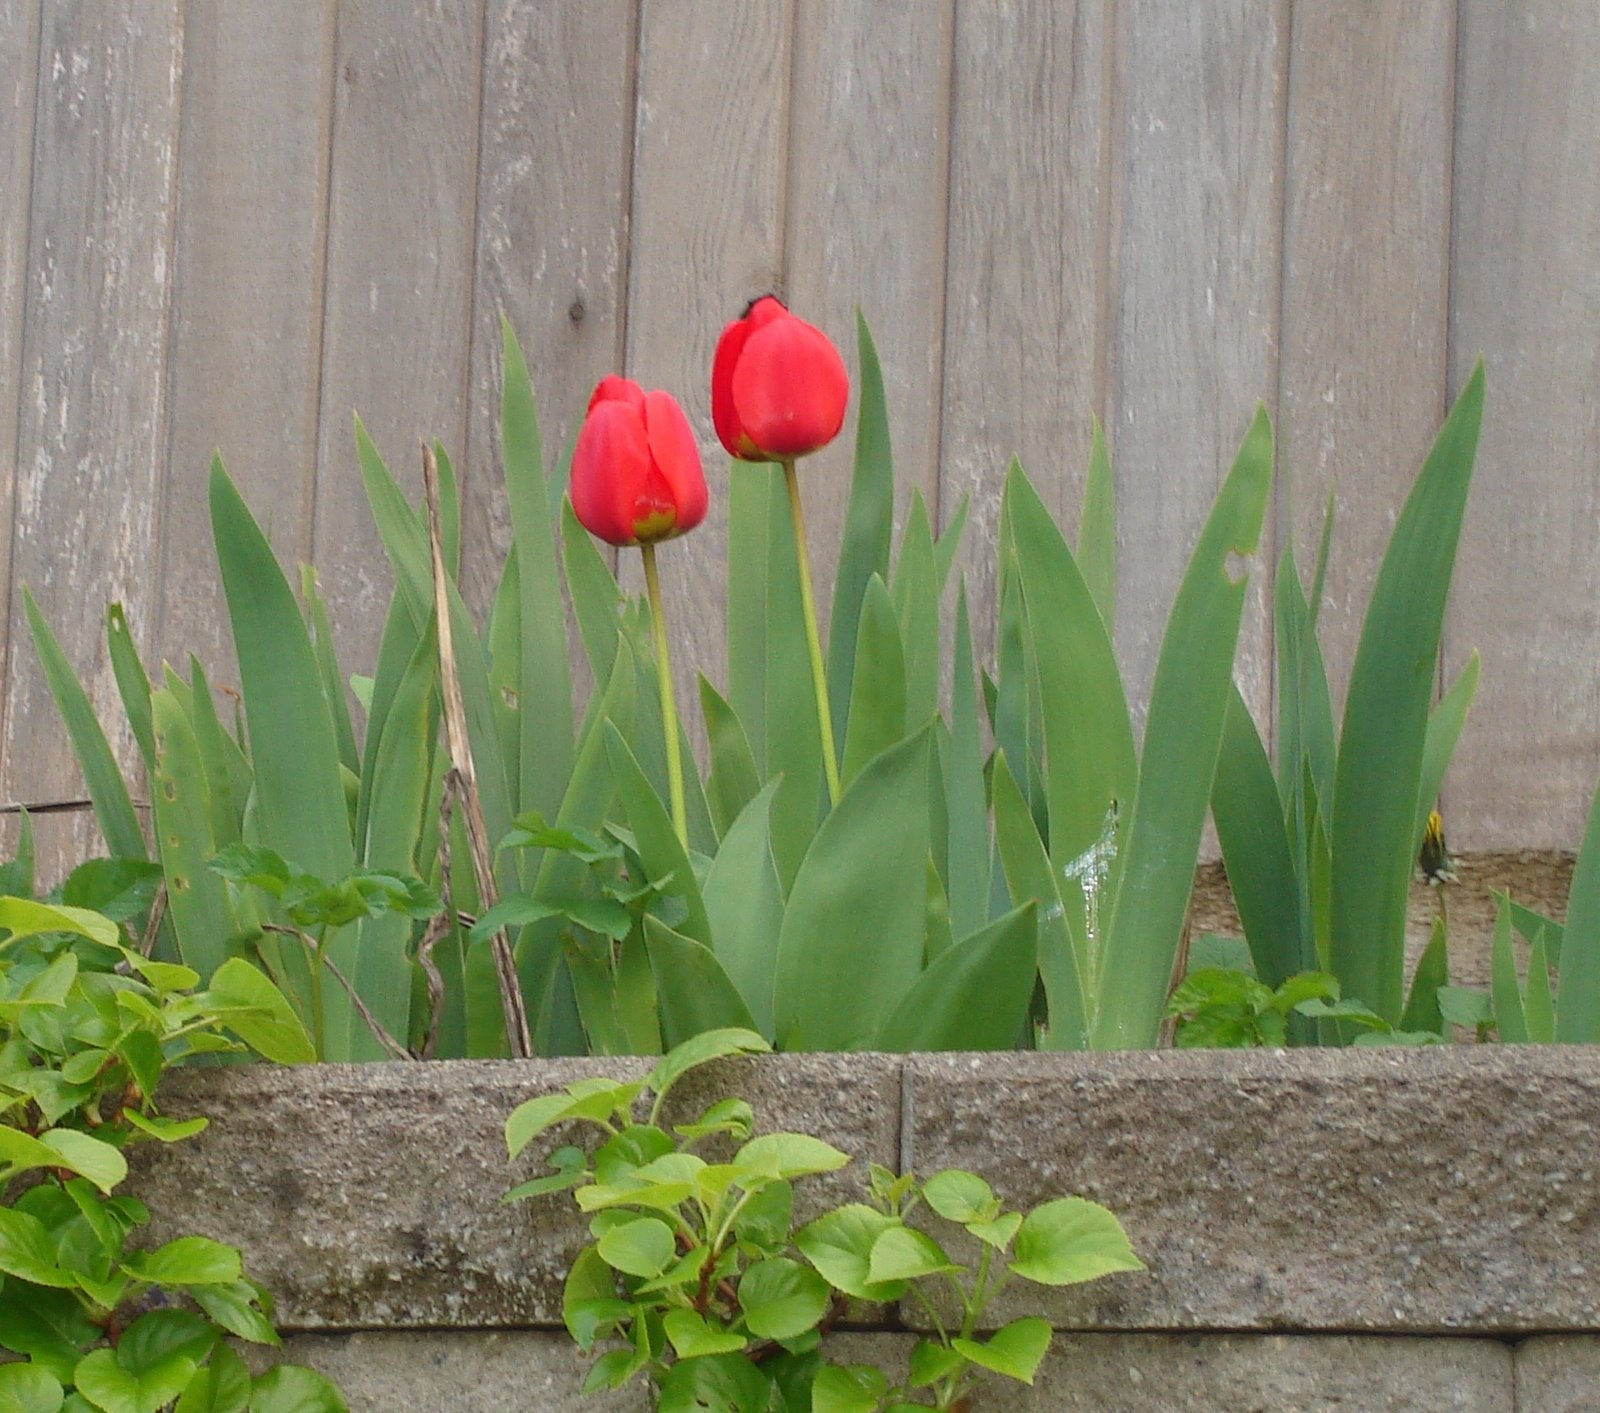 Tulips among iris greenery